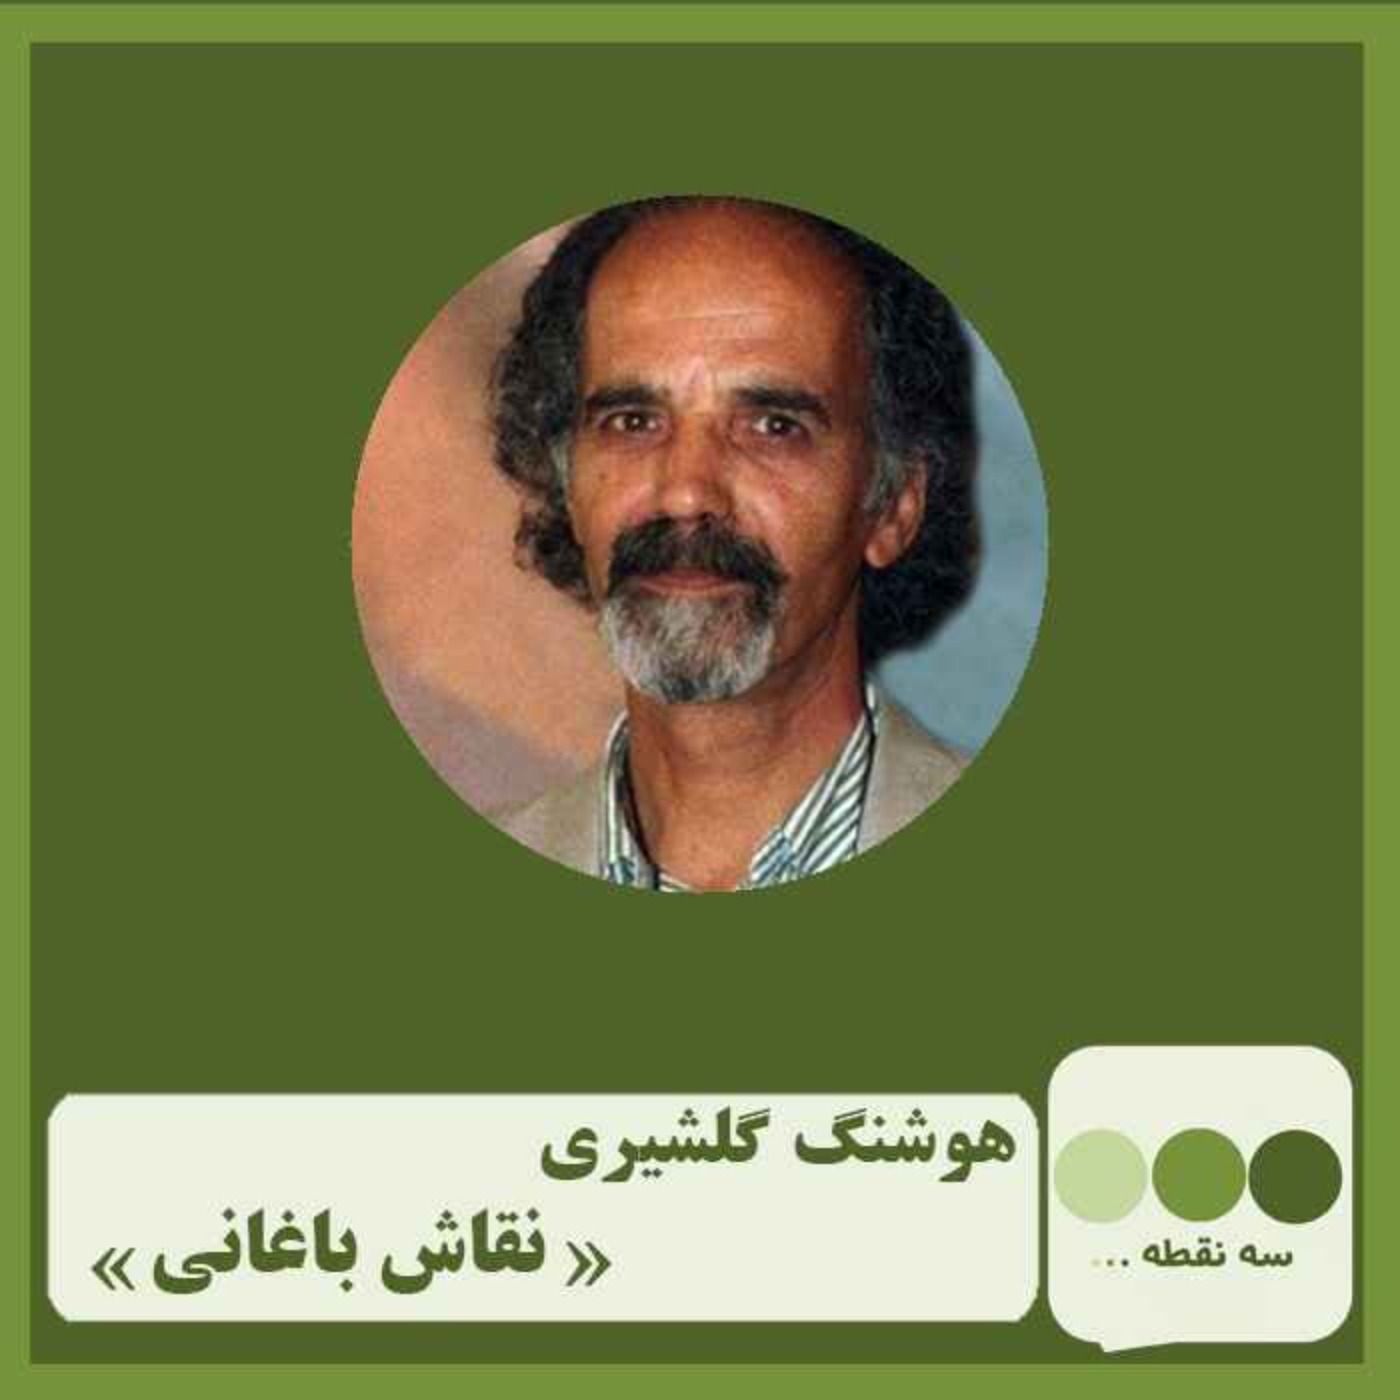 قشمت چهلم نقاش باغانی نوشته ی هوشنگ گلشیری